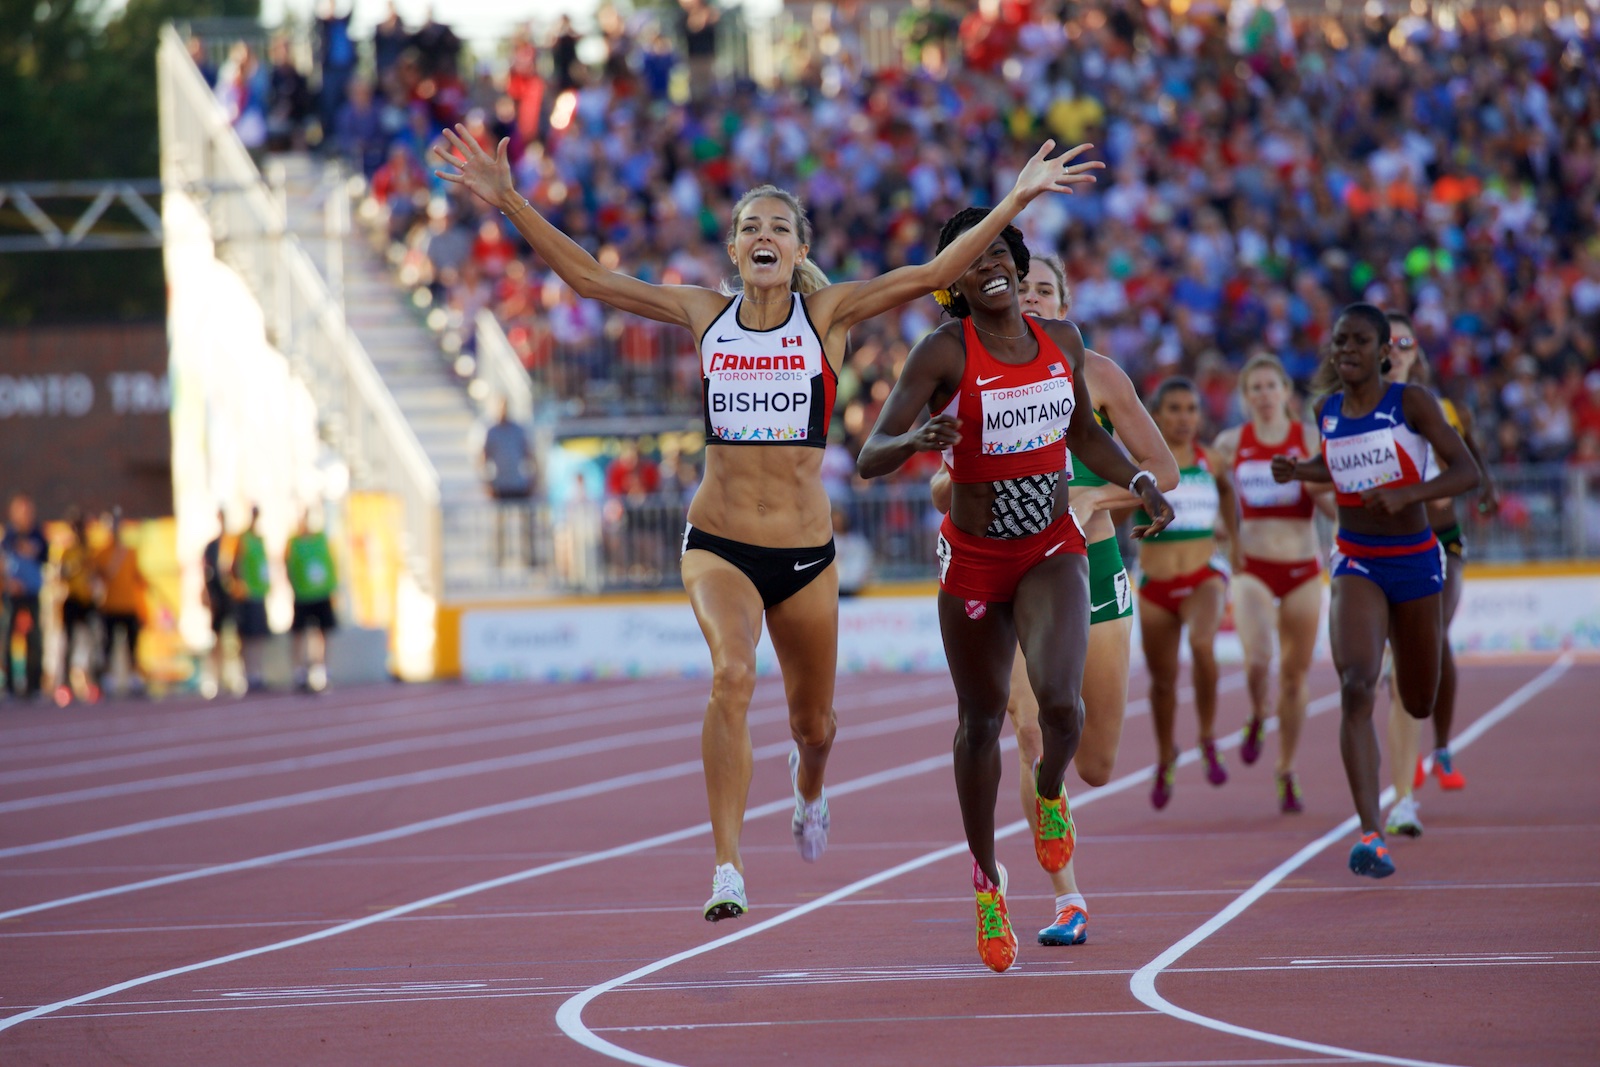 Melissa Bishop winning the women's 800m